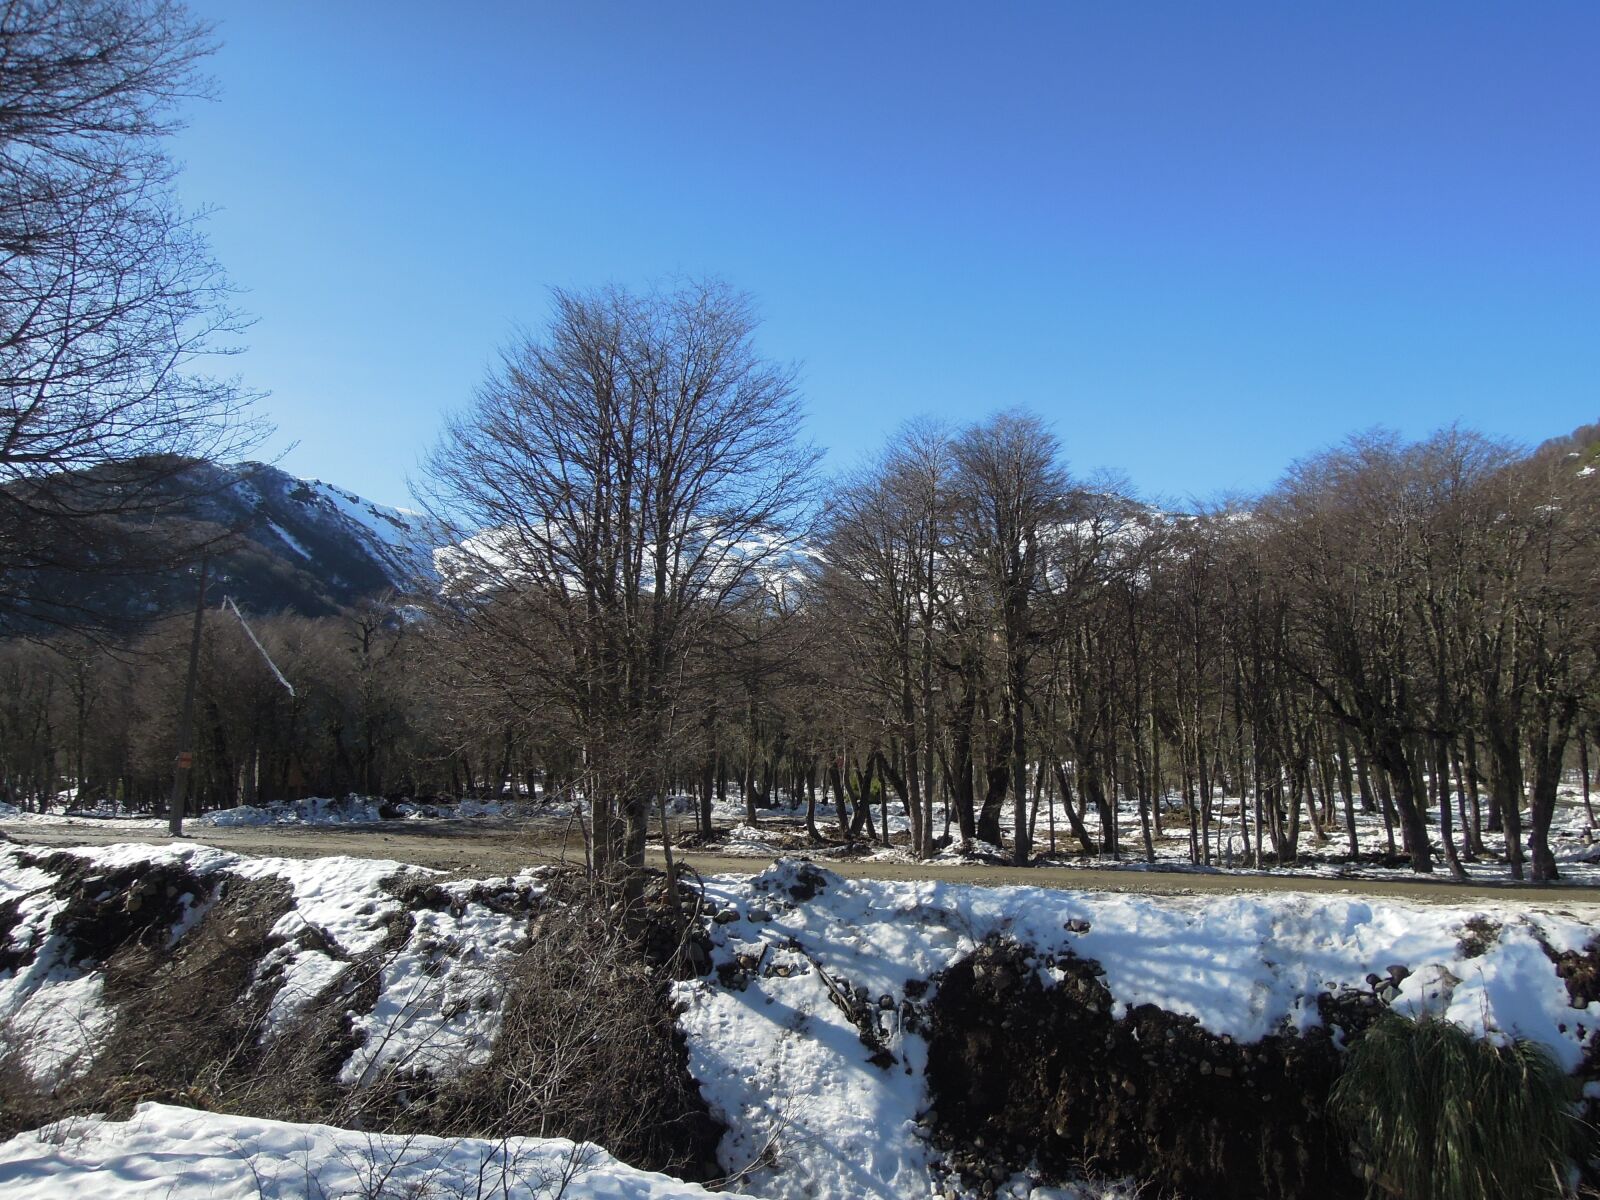 Nikon Coolpix P300 sample photo. Snow, trees, mountain photography